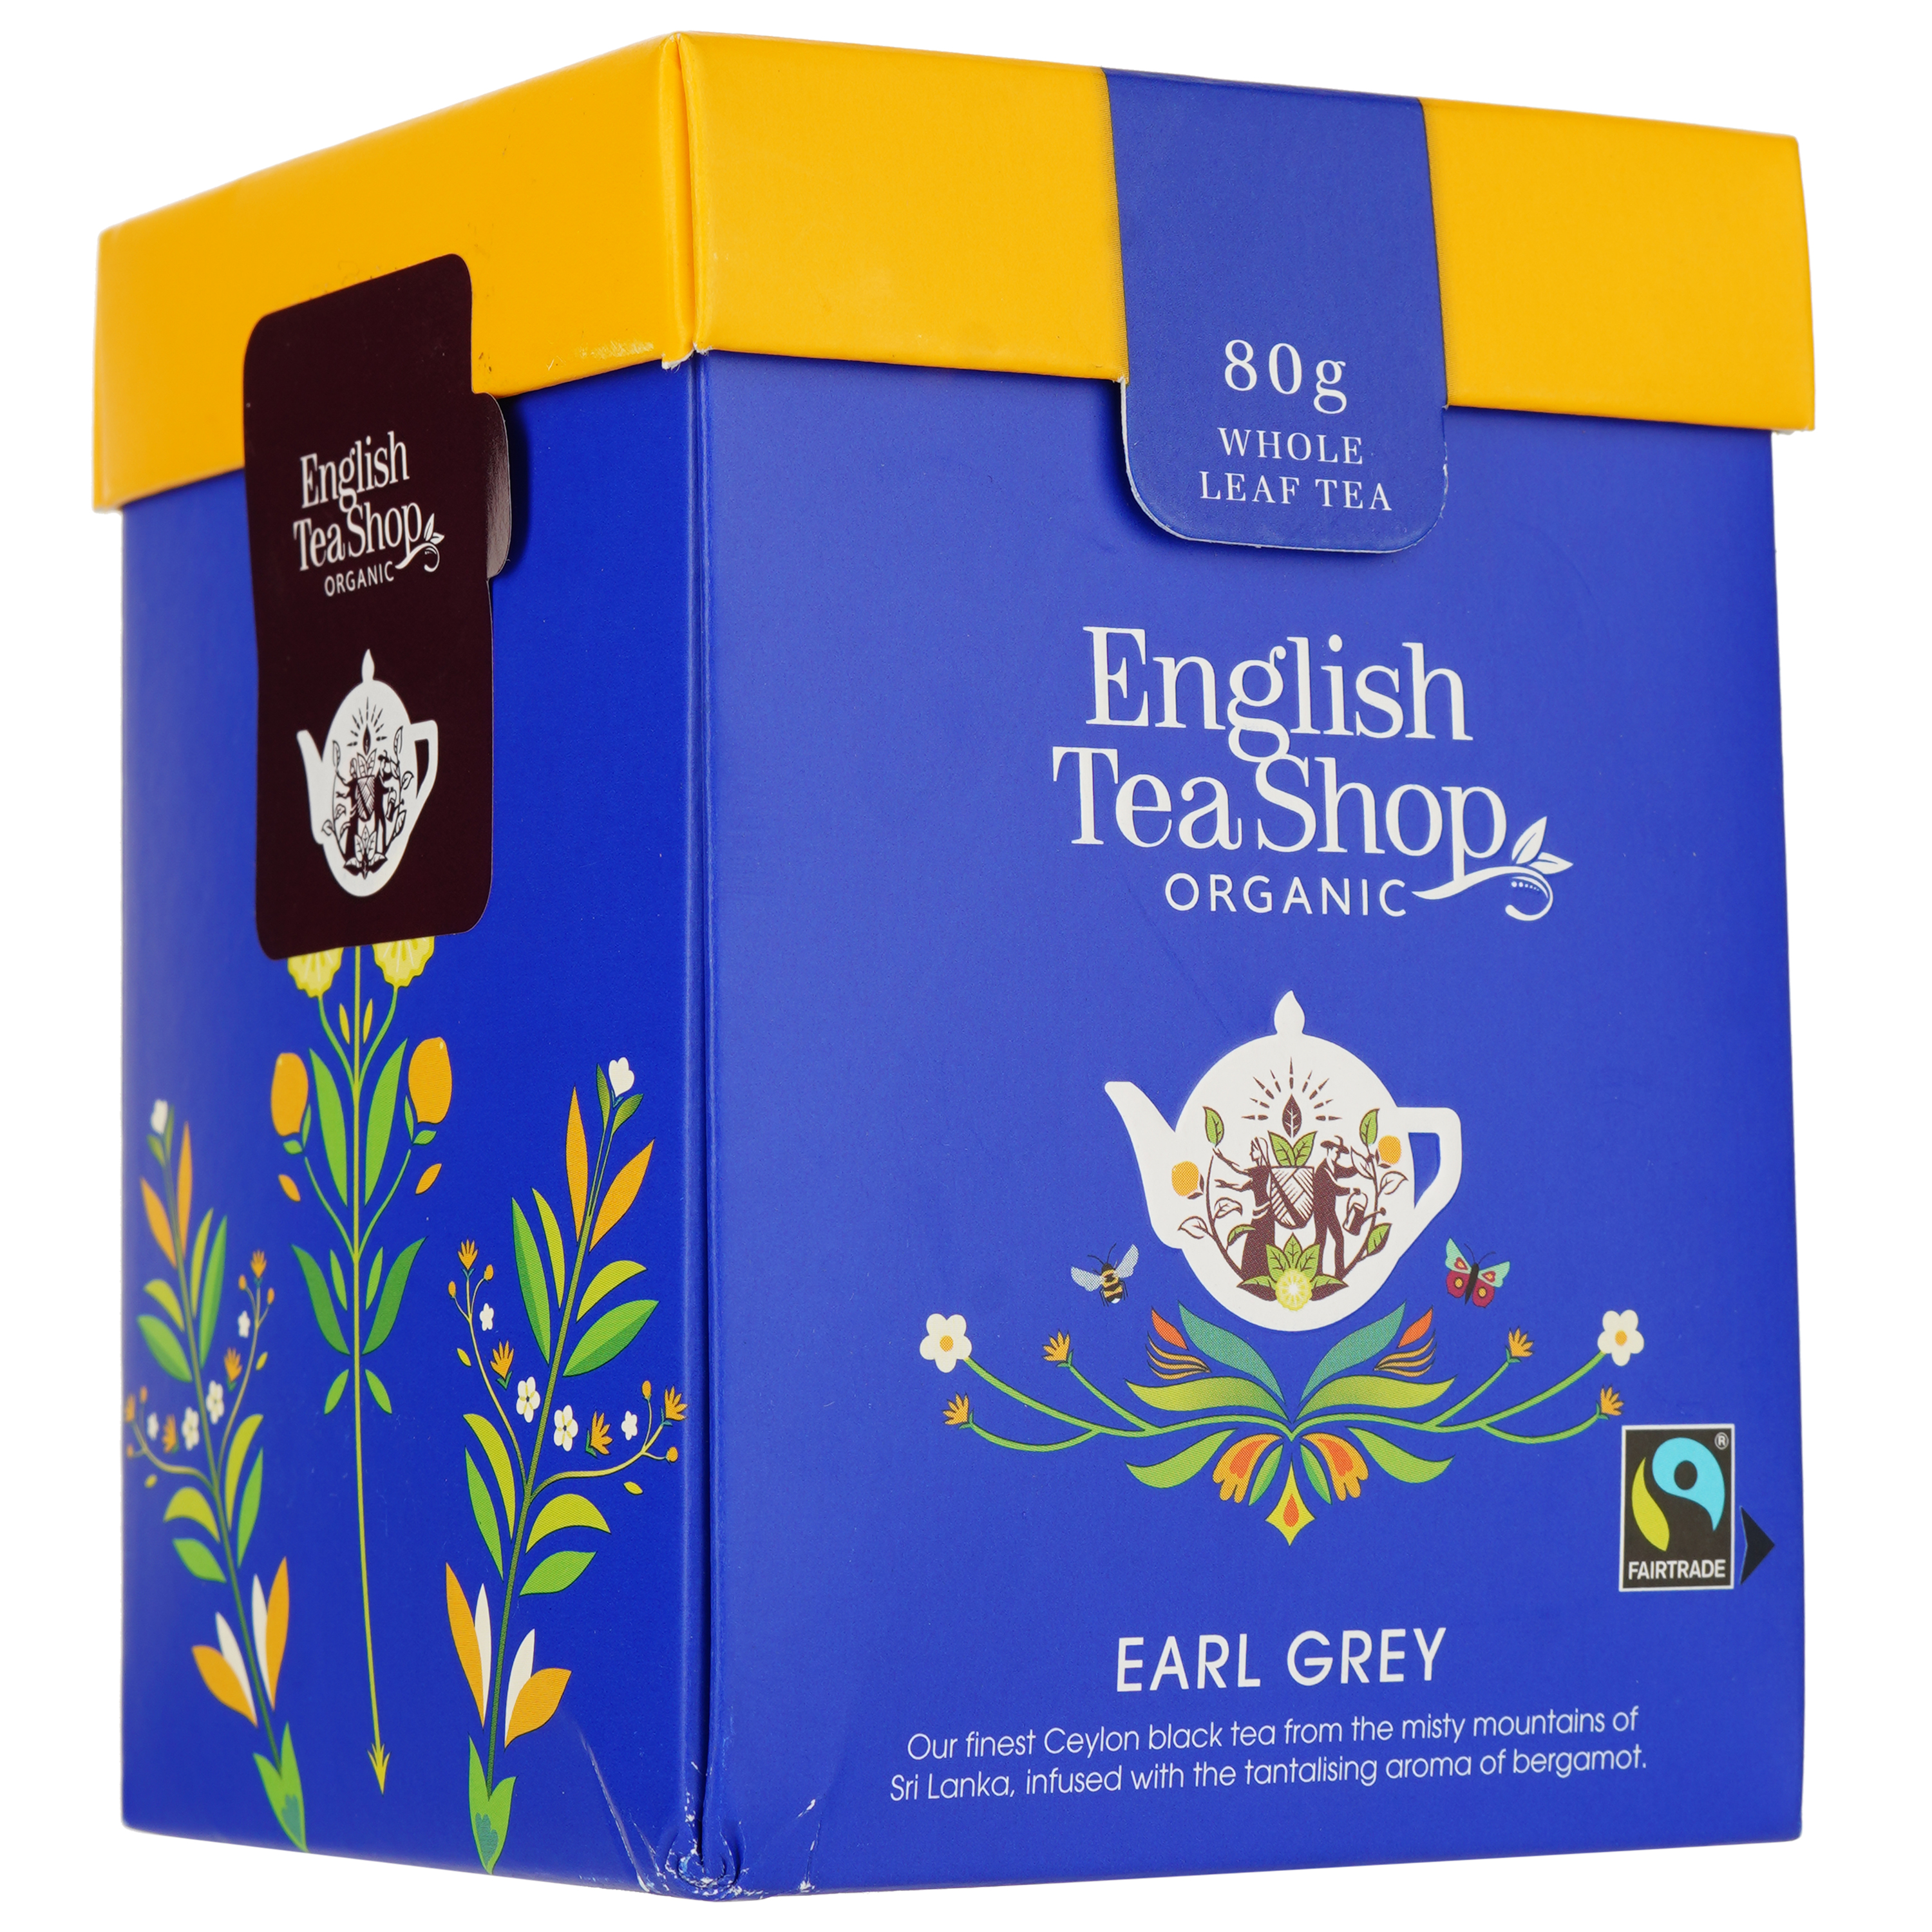 Чай чорний English Tea Shop Earl Grey, 80г (818891) - фото 2